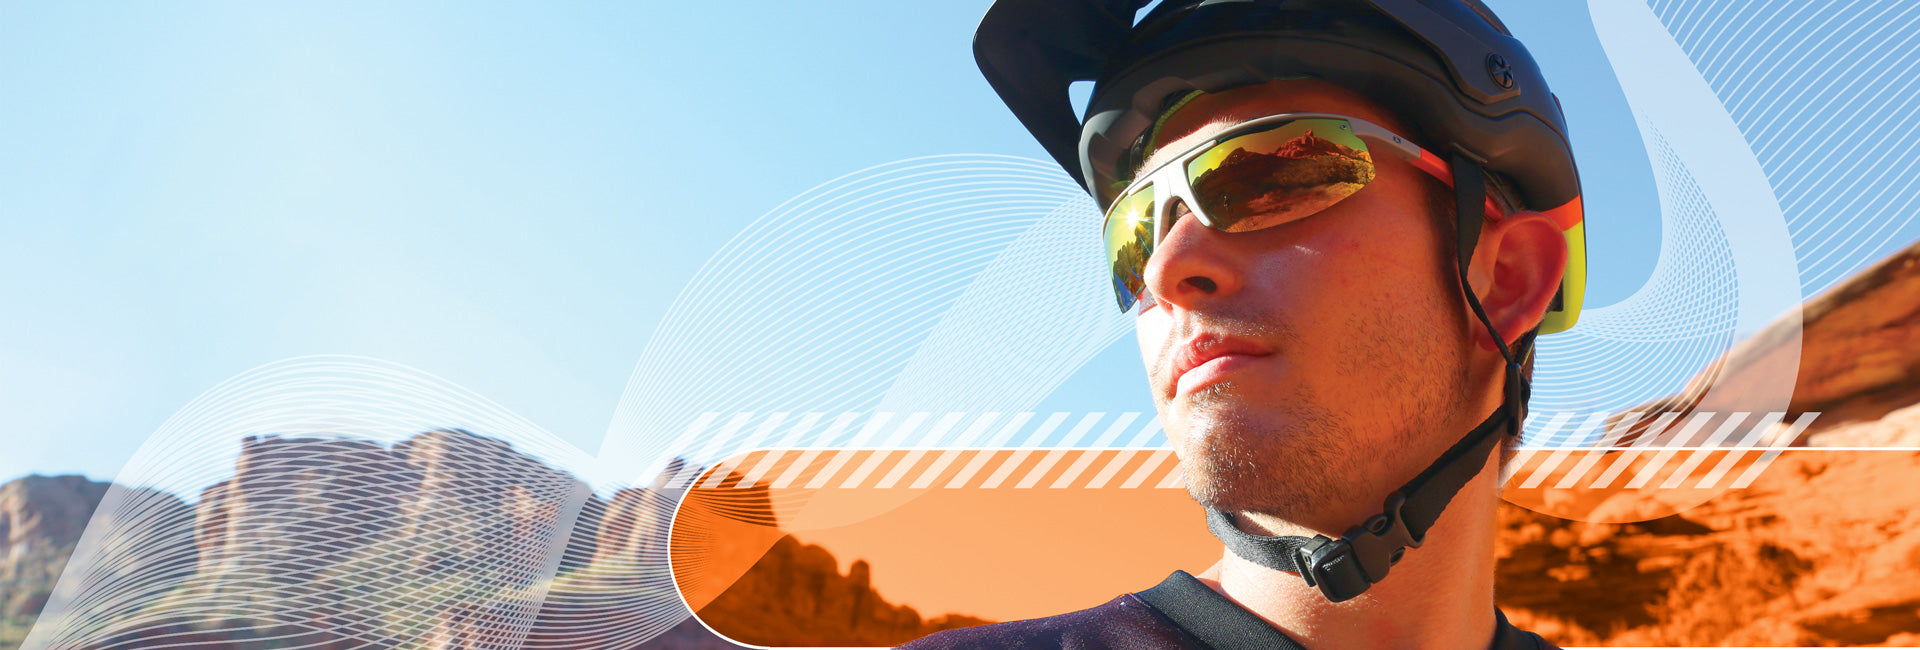 man wearing cycling sunglasses